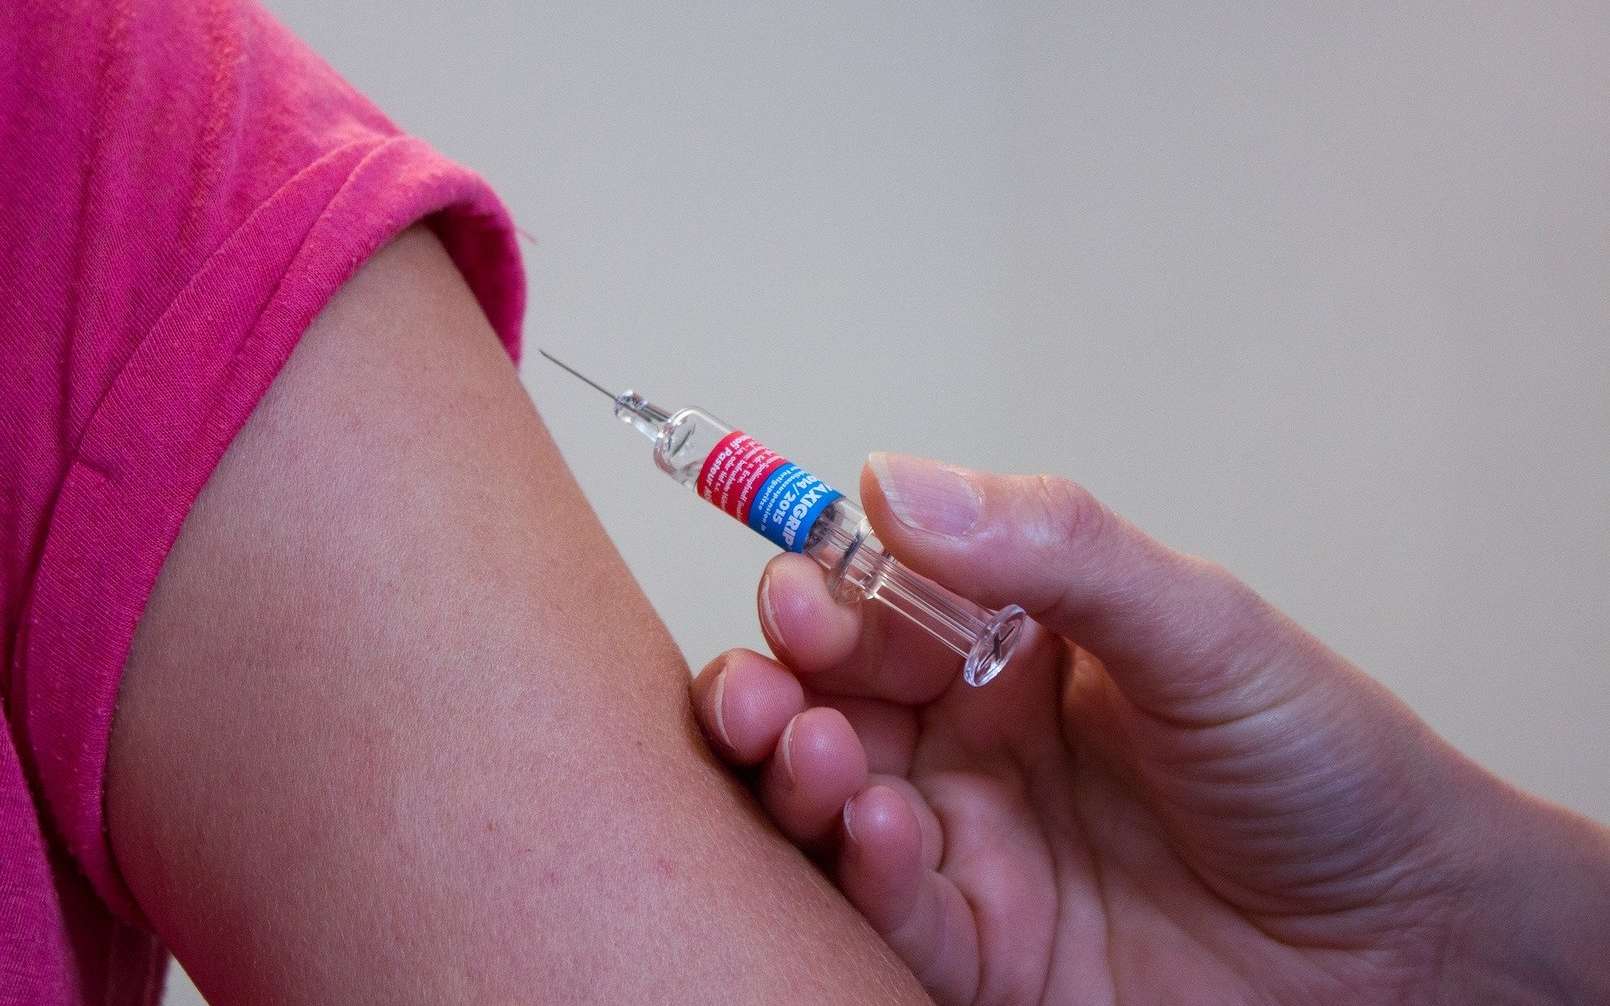 Votre carnet de vaccination bientôt injecté sous votre peau ?